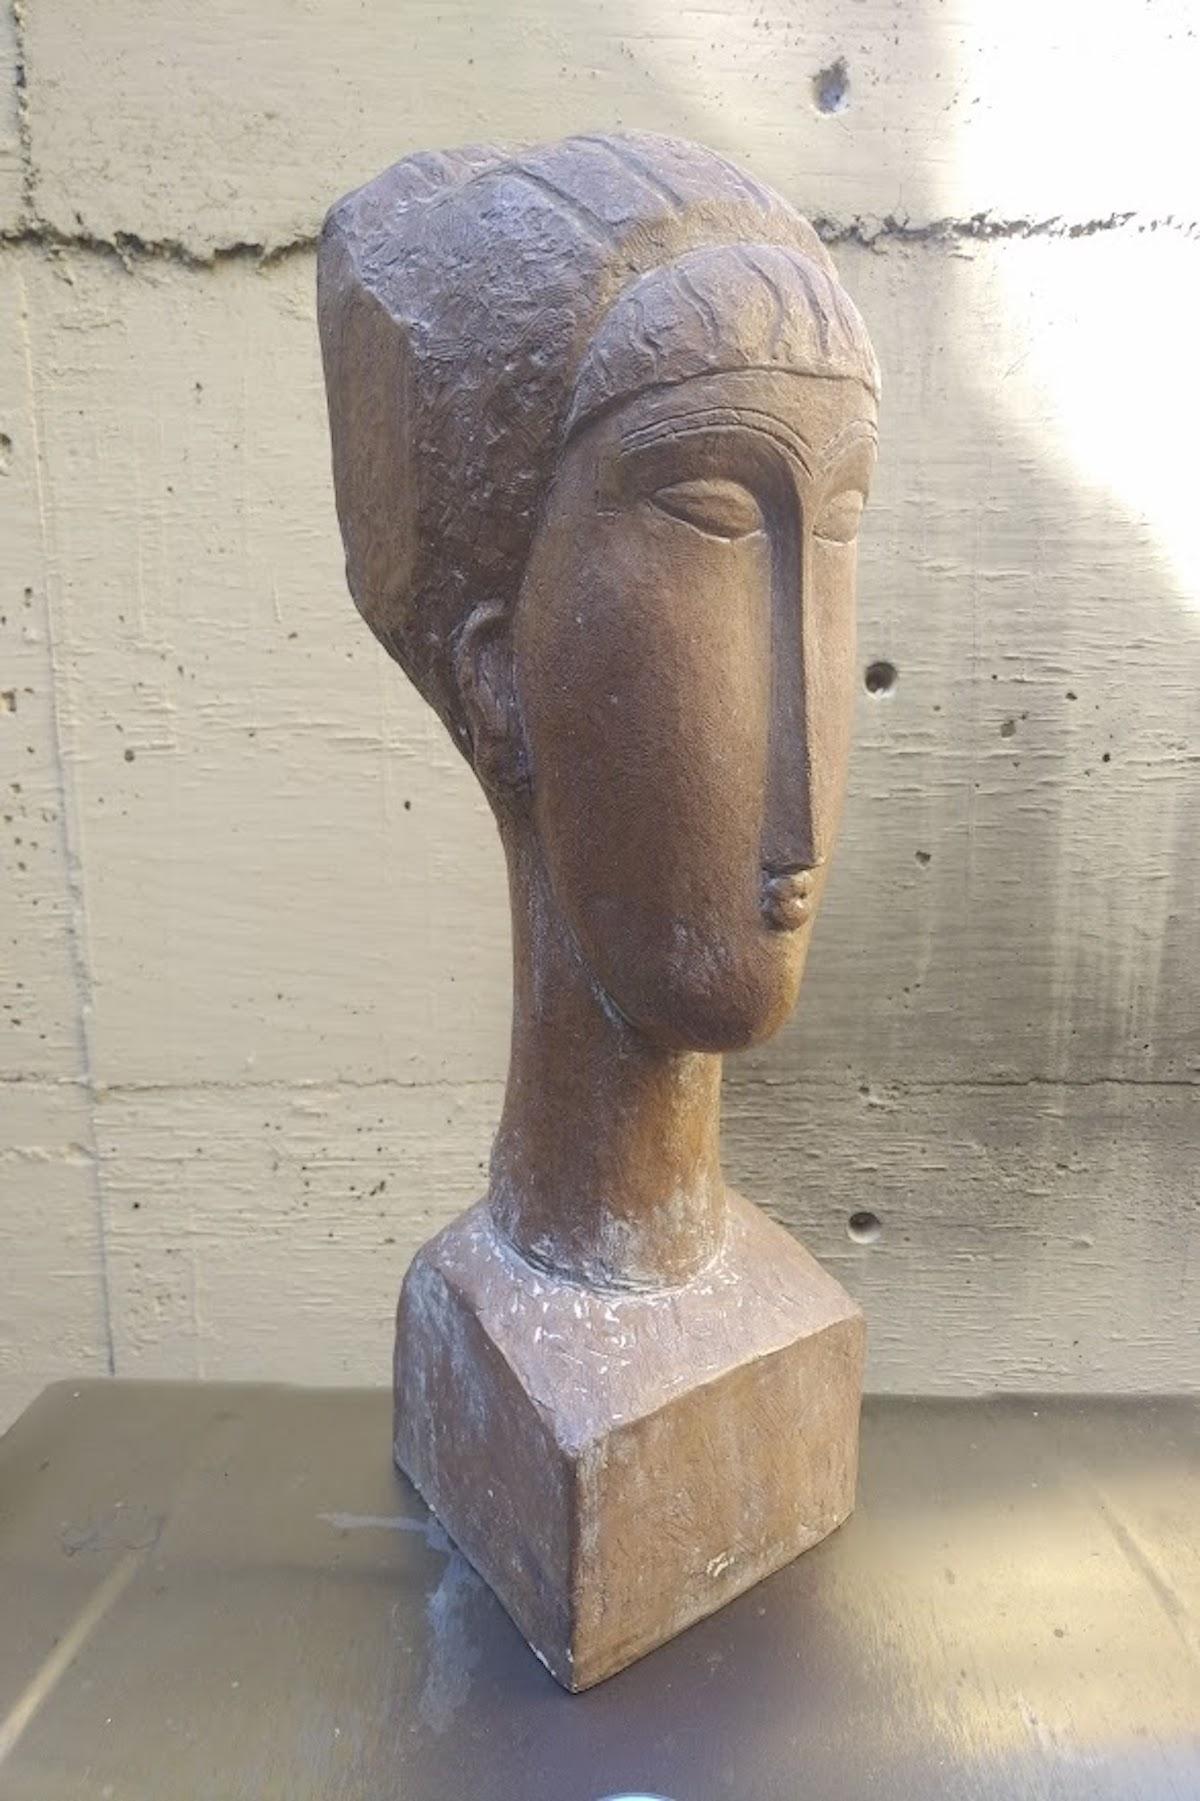 Figurative Sculpture Amedeo Modigliani - Sculpture Tete de Femme, édition limitée, Austin Productions 1961, d'après Modigliani